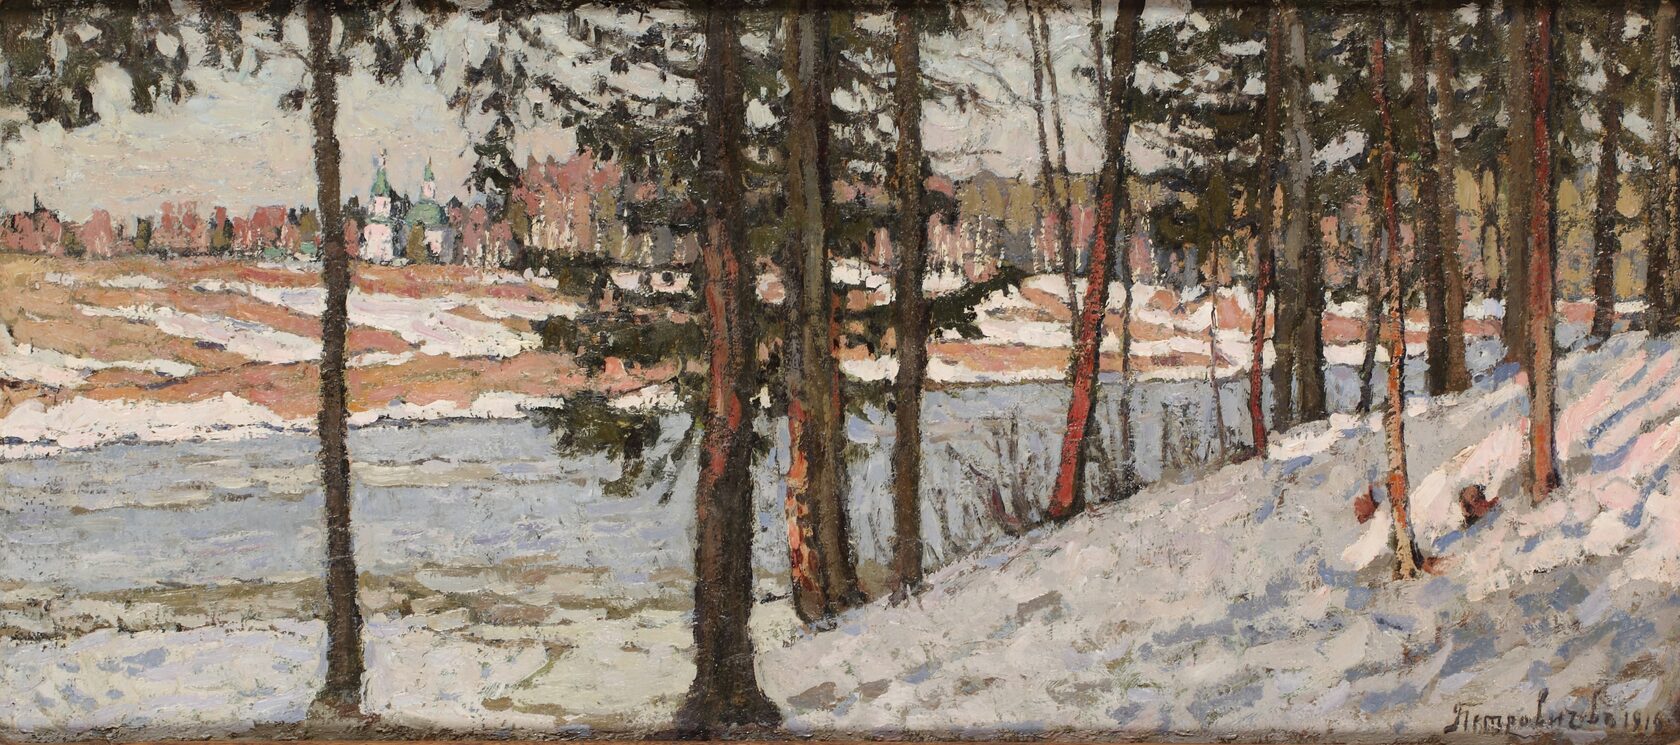 Зимний пейзаж с рекой. 1916 